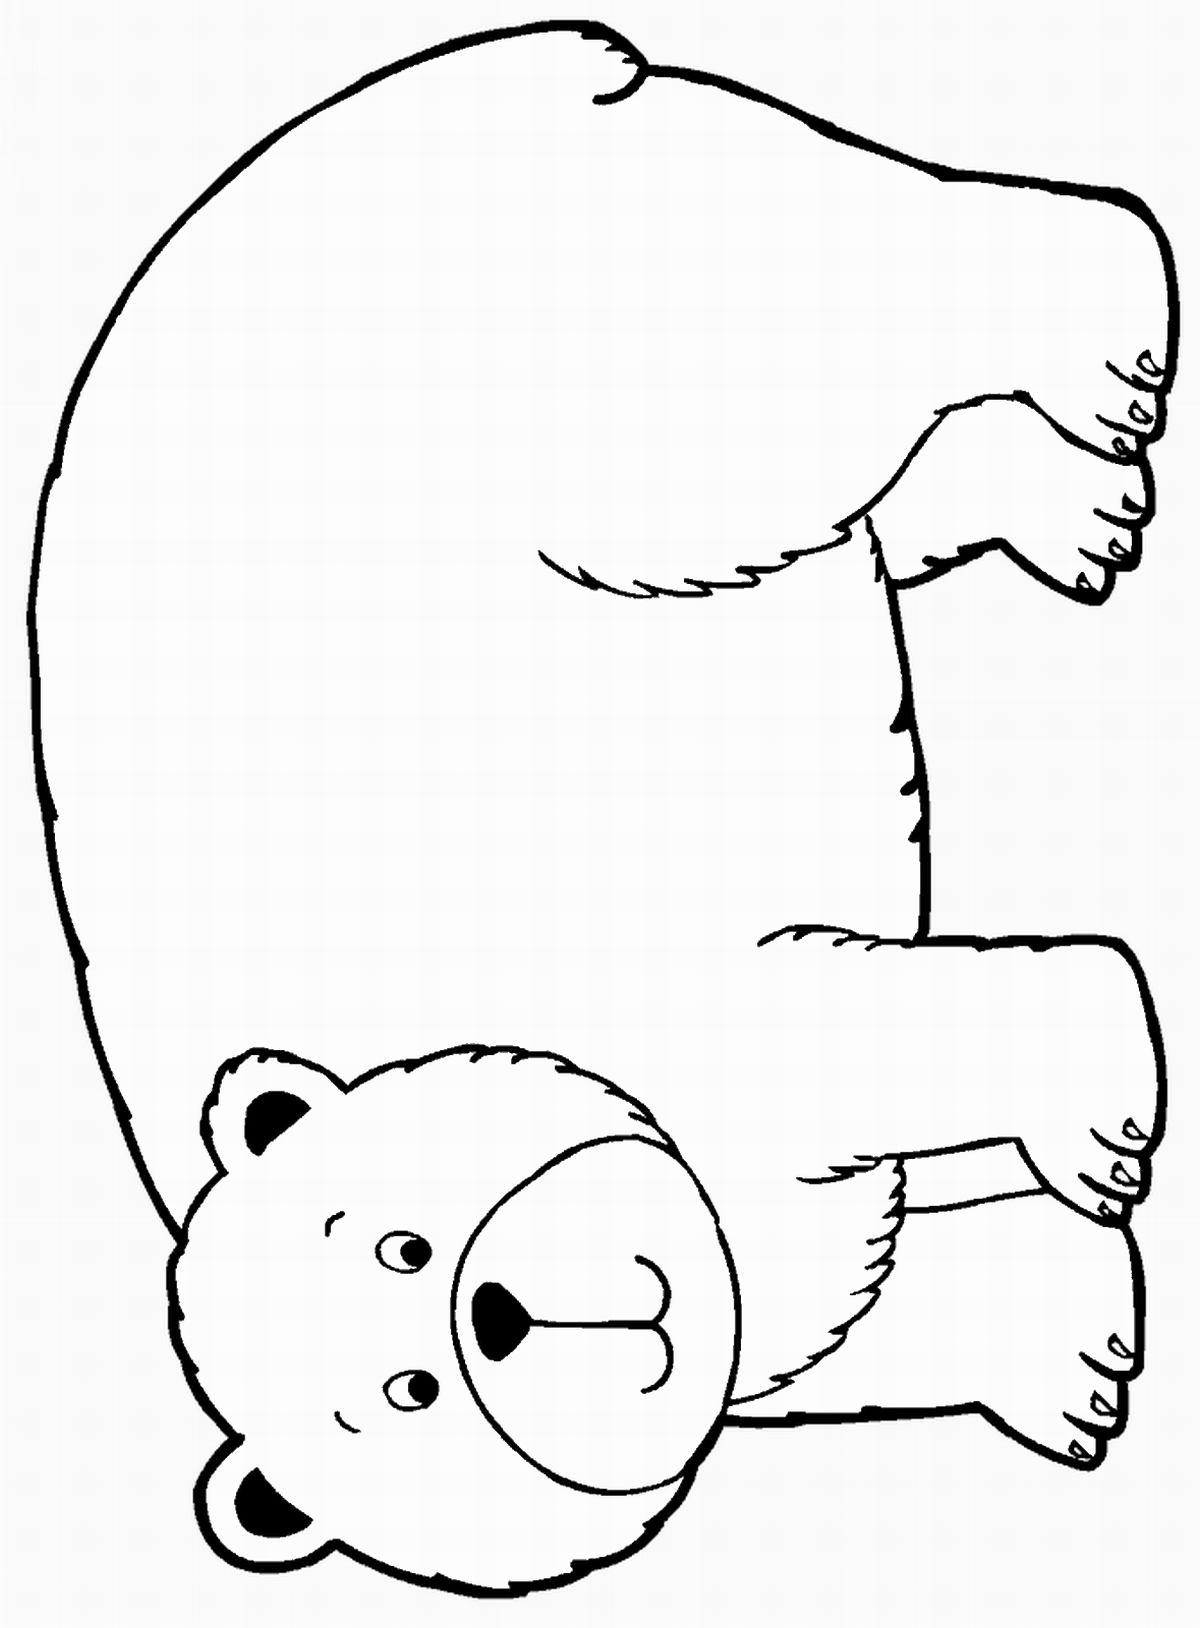 Раскраска медведь для детей 2 3 лет. Раскраска. Медвежонок. Медведь раскраска. Медведь для раскрашивания детям. Раскраска "мишки".